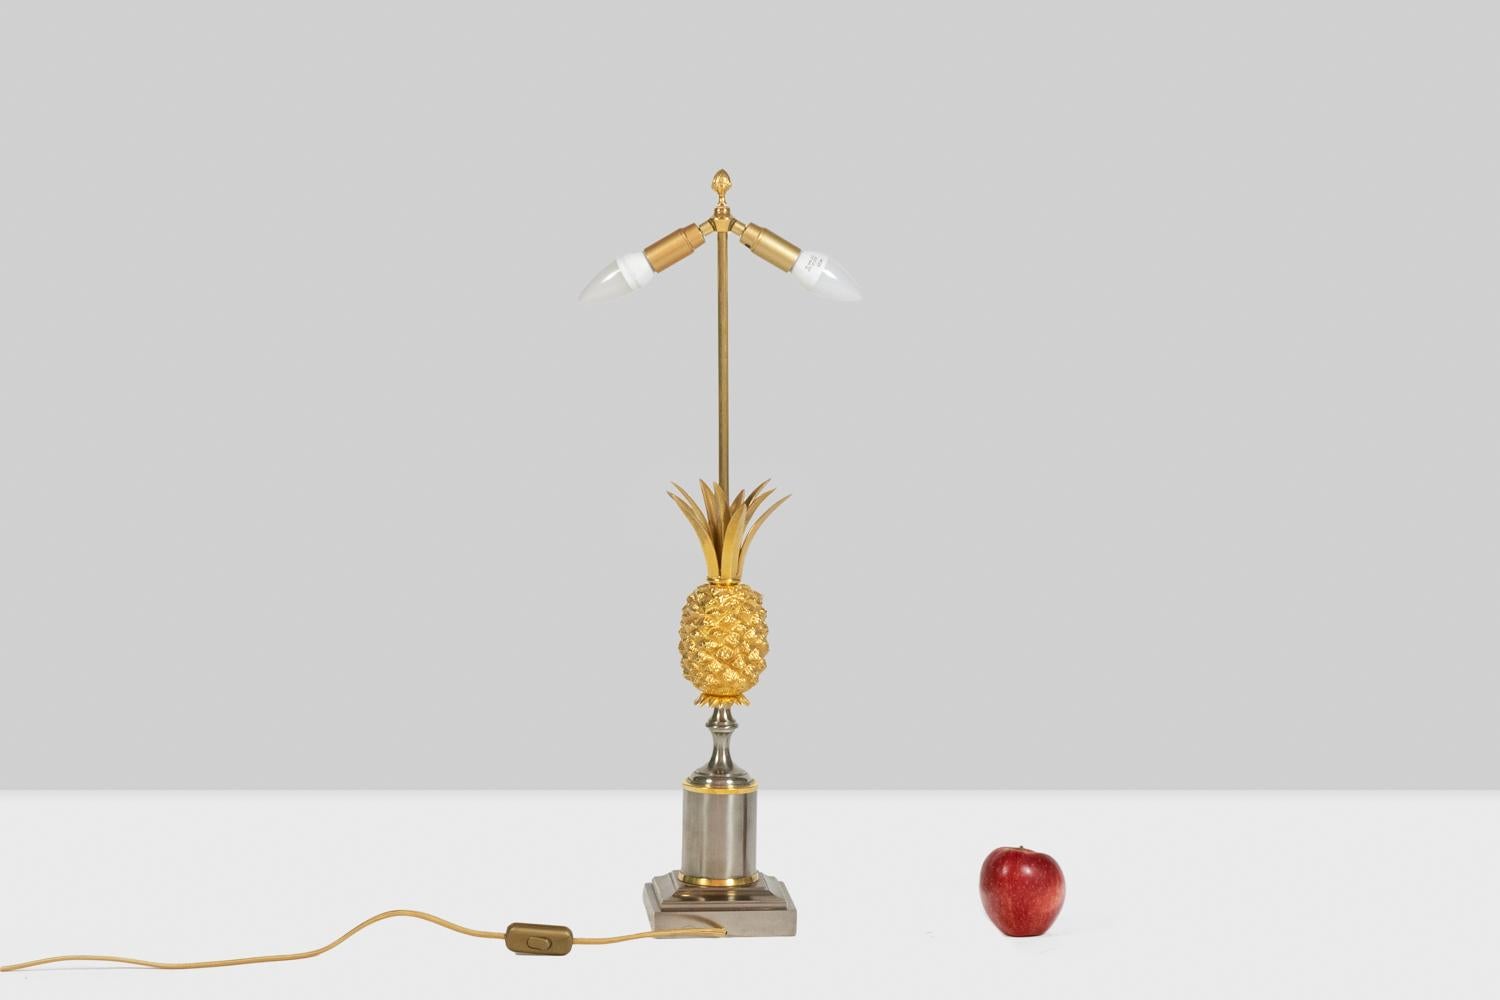 Lampe en bronze doré représentant un ananas stylisé. Base argentée polie. Abat-jour original en tôle argentée, se terminant en haut par une houppe stylisée.

Dimensions : H 74 x L 14 x P 14 cm : H 74 x L 14 x P 14 cm

Travail français réalisé dans